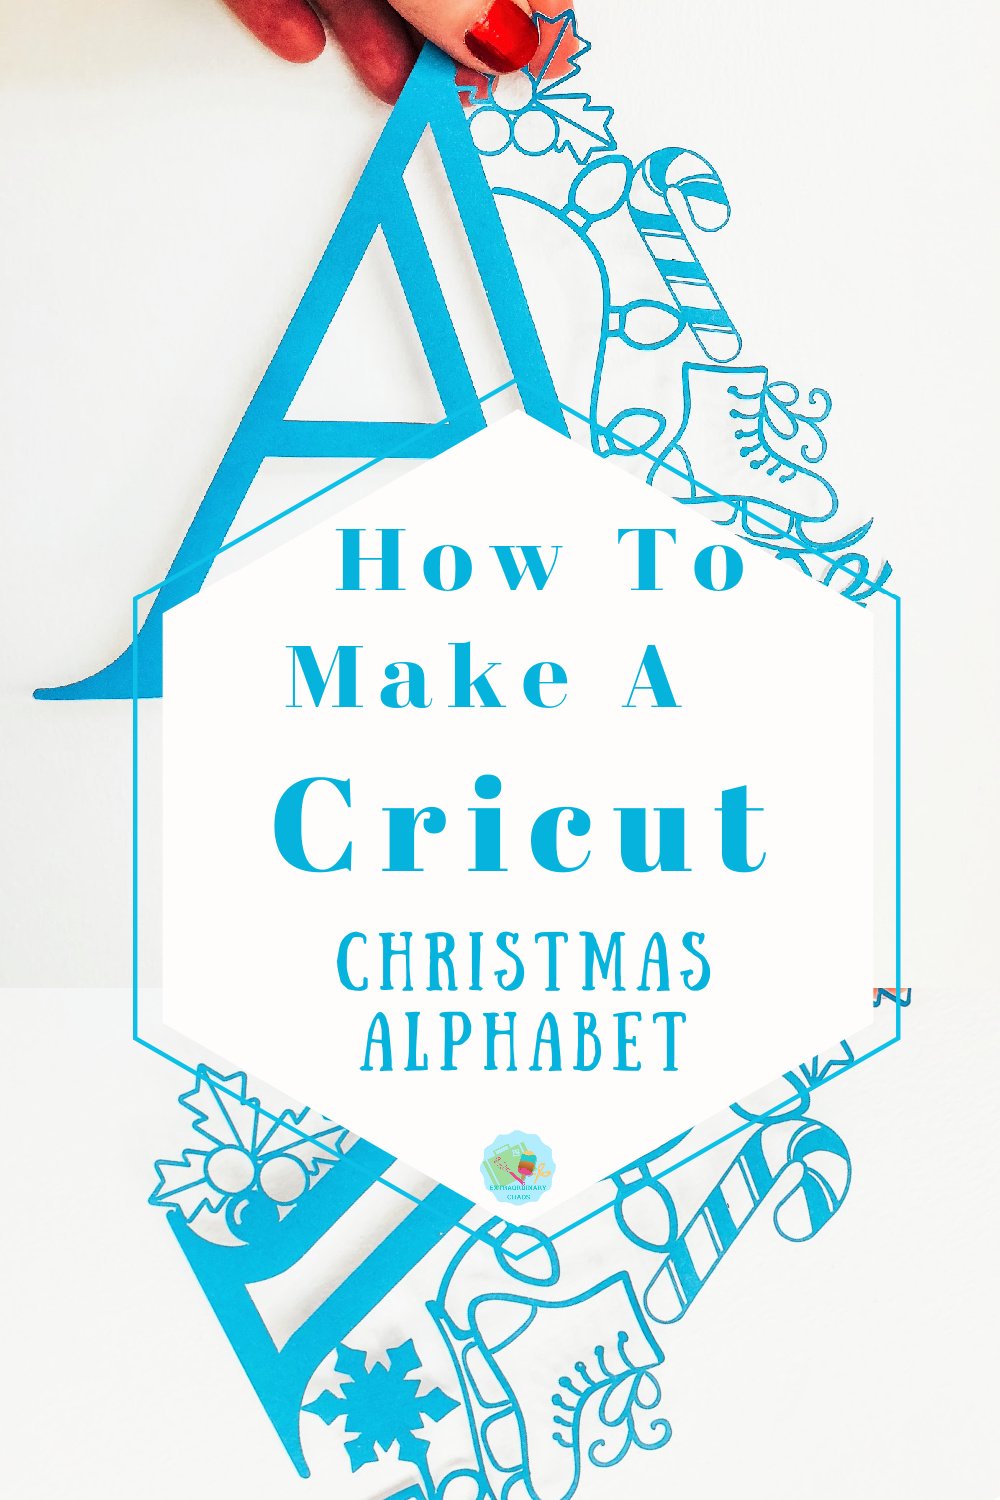 How to make a Cricut Christmas Alphabet in Cricut Design Space